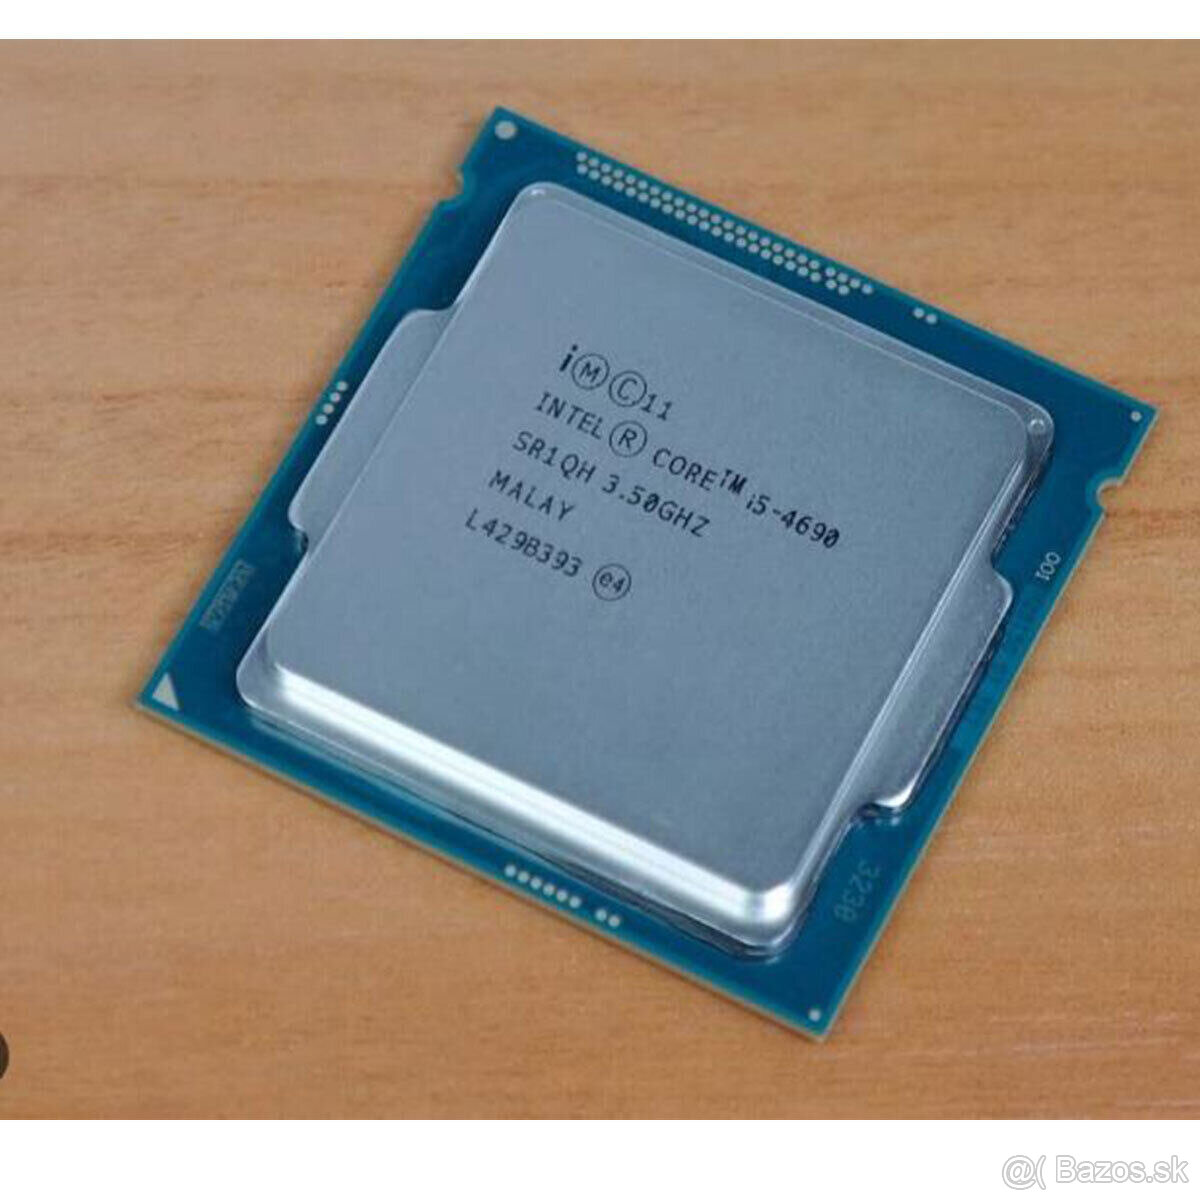 Intel Core i5-4690 soc.1150